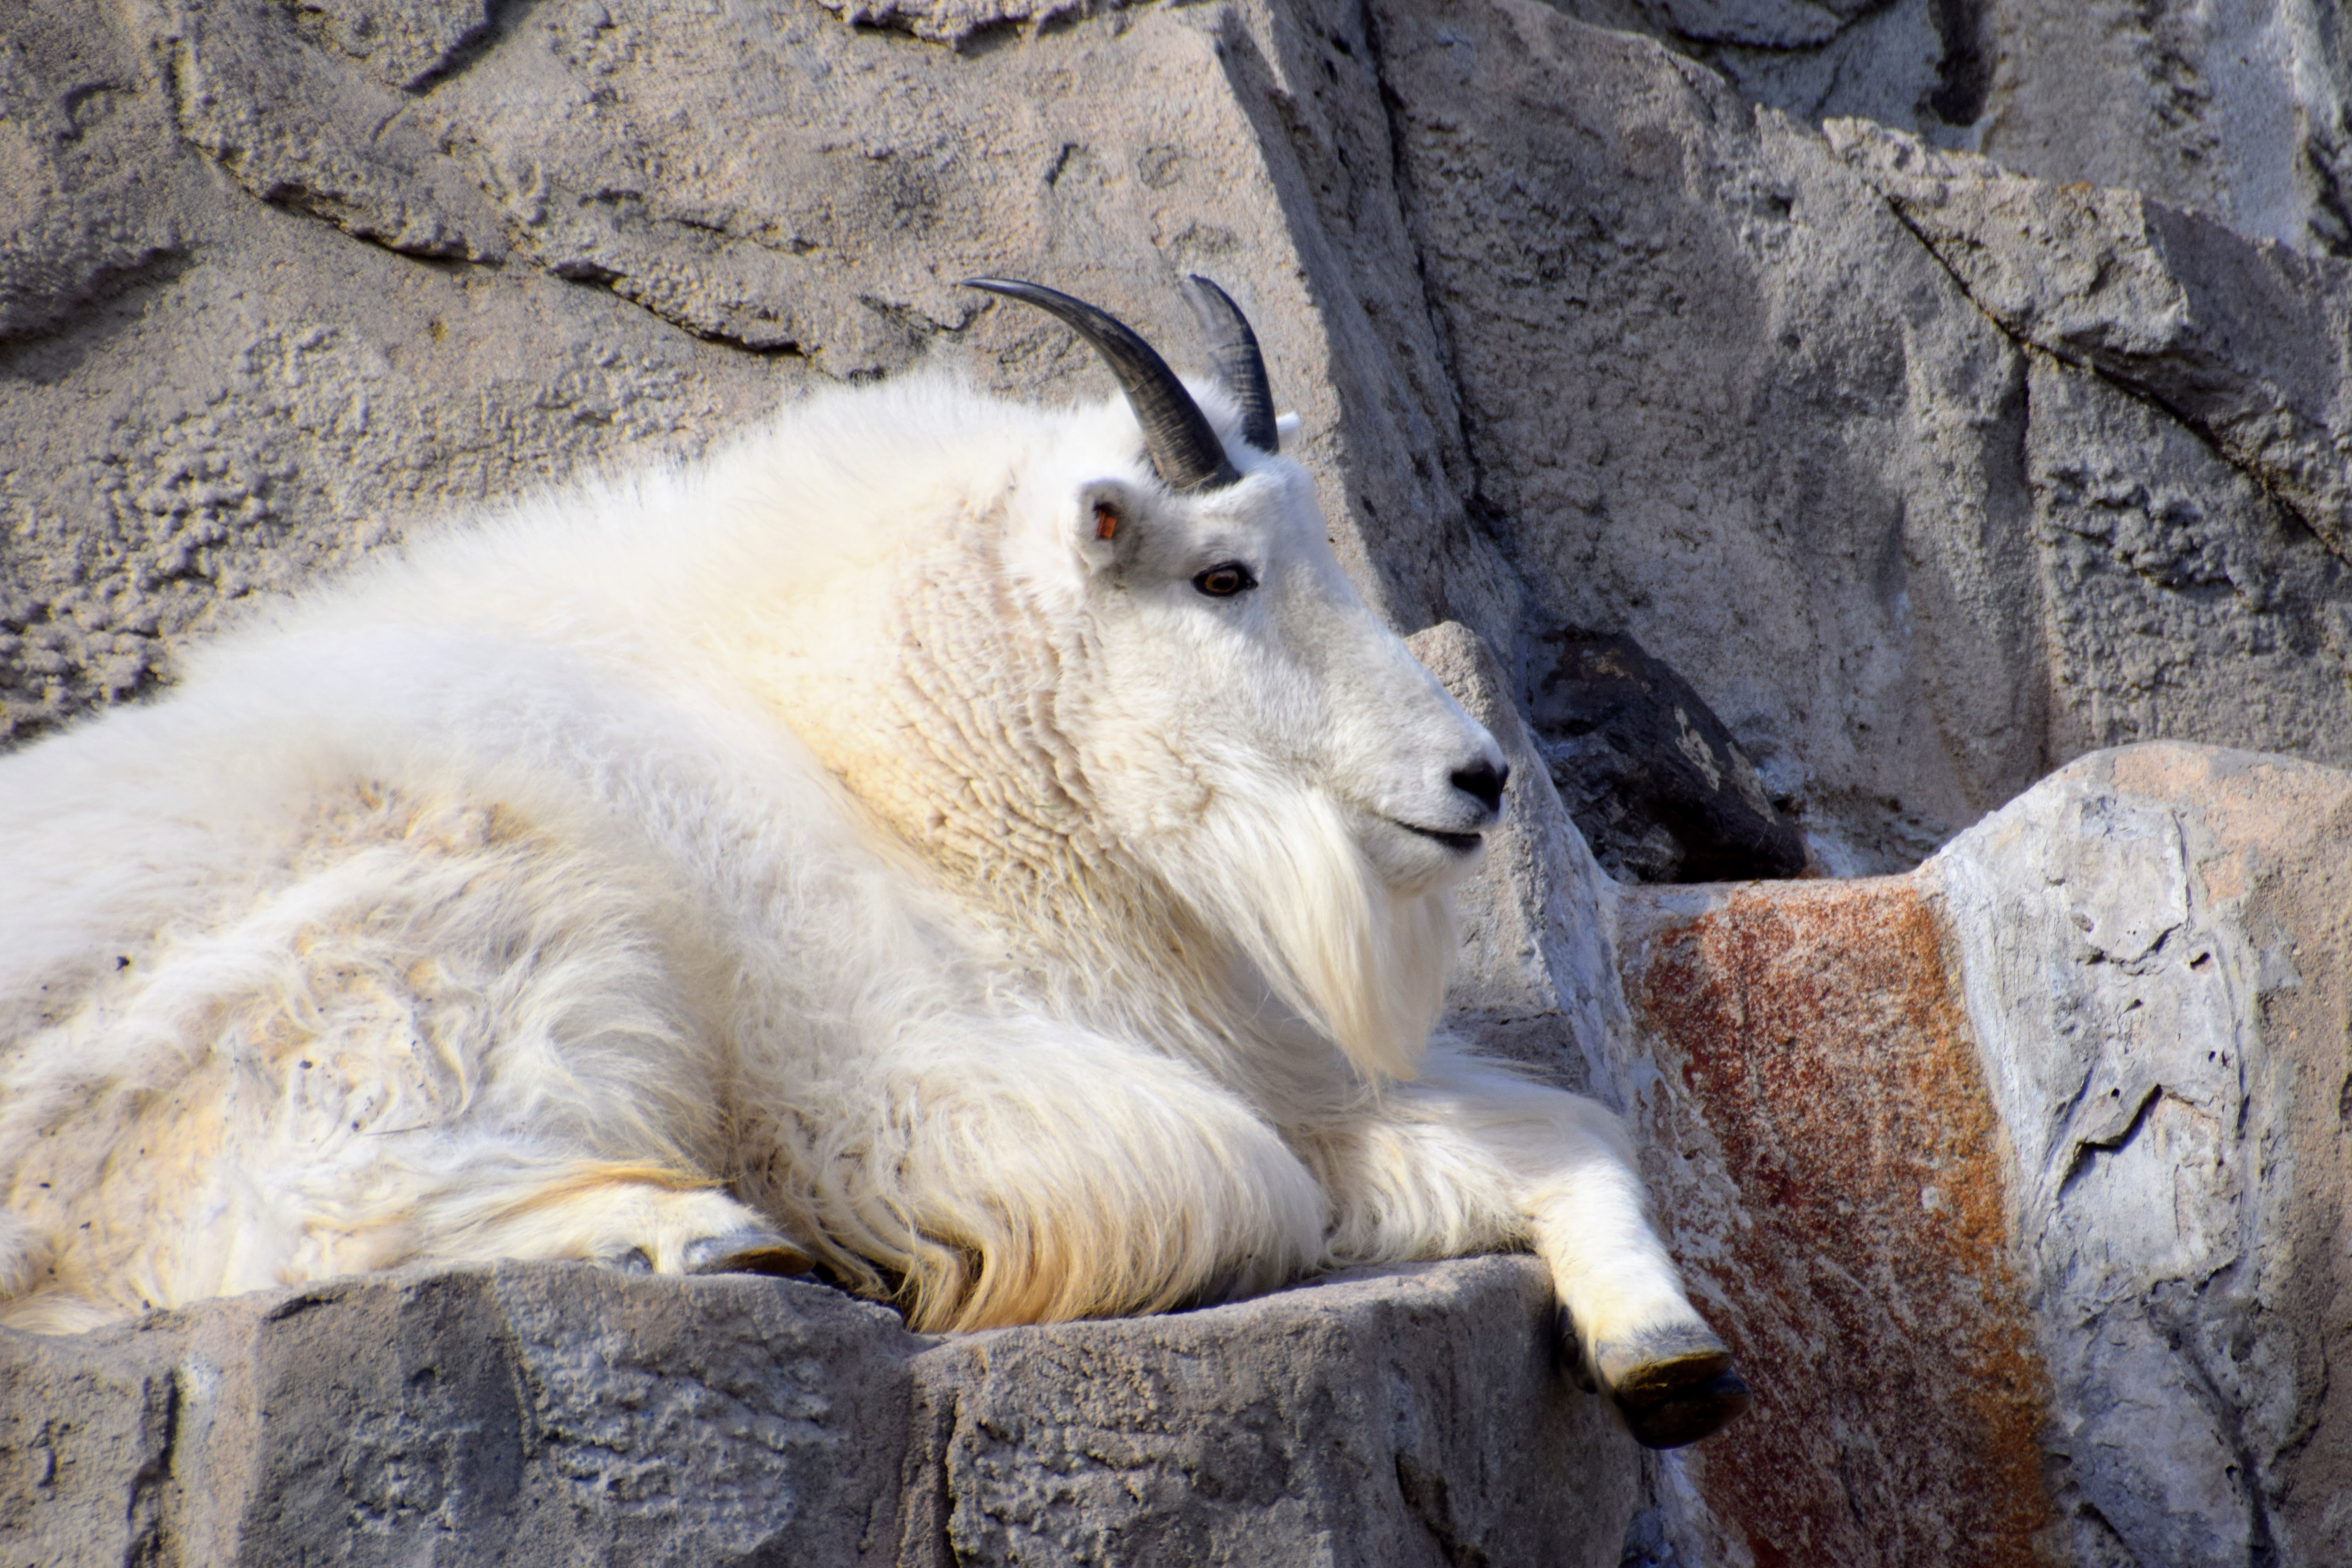 mountain-goat